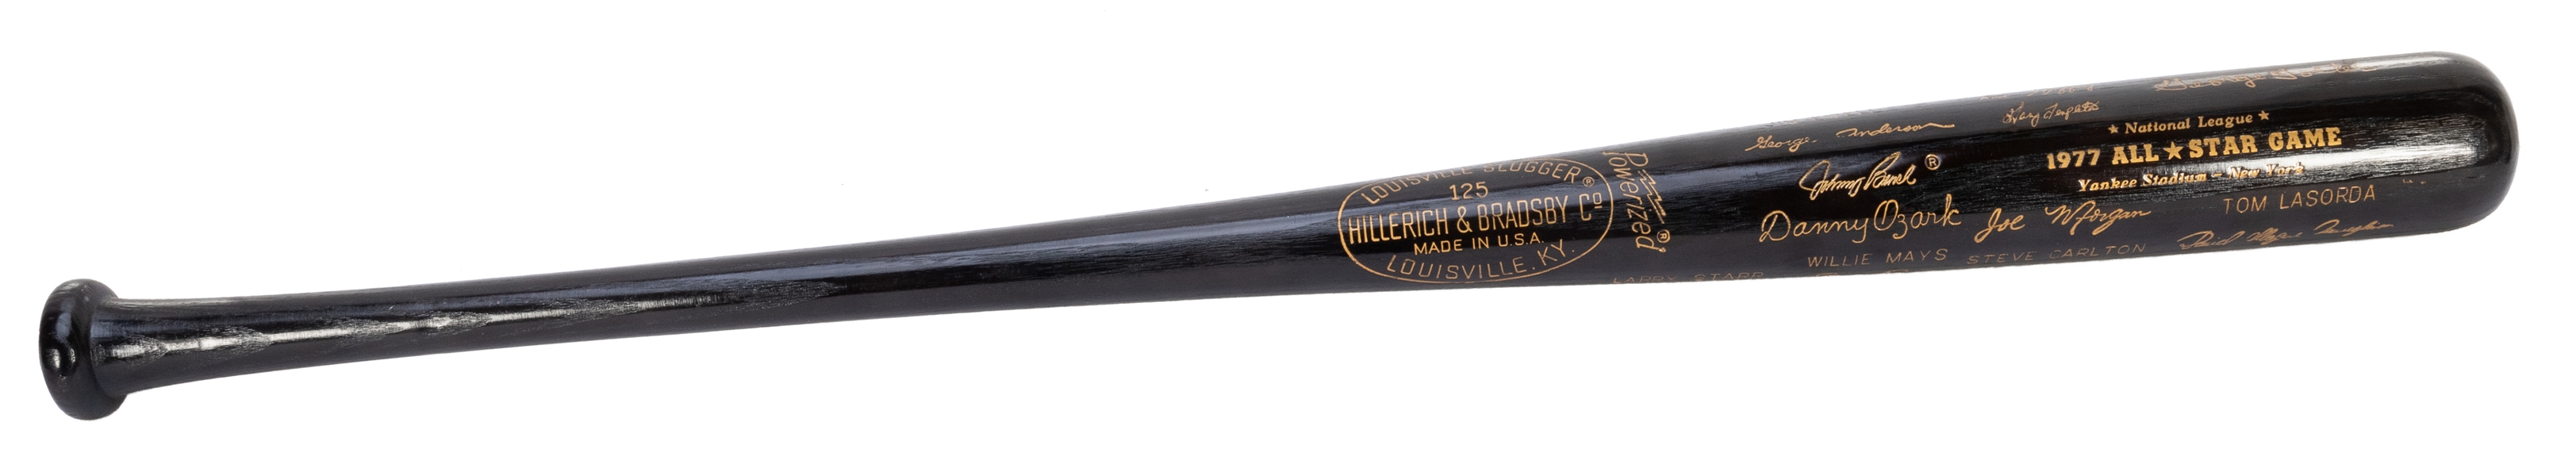  1977 All-Star Game Commemorative Baseball Bat. Hillerich an...